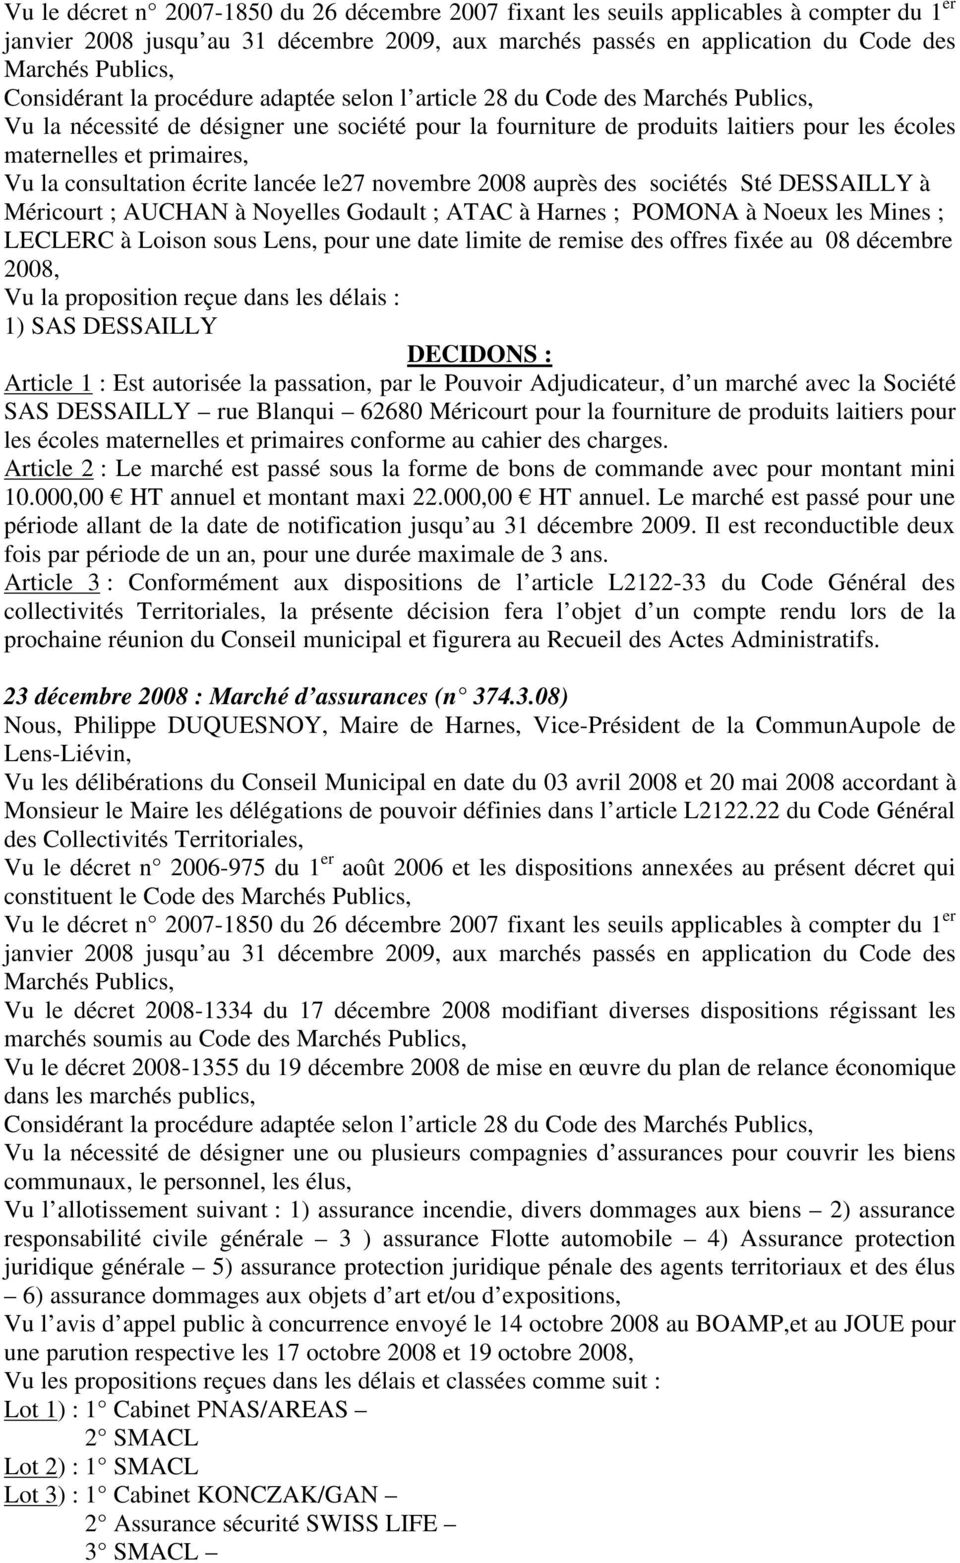 primaires, Vu la consultation écrite lancée le27 novembre 2008 auprès des sociétés Sté DESSAILLY à Méricourt ; AUCHAN à Noyelles Godault ; ATAC à Harnes ; POMONA à Noeux les Mines ; LECLERC à Loison